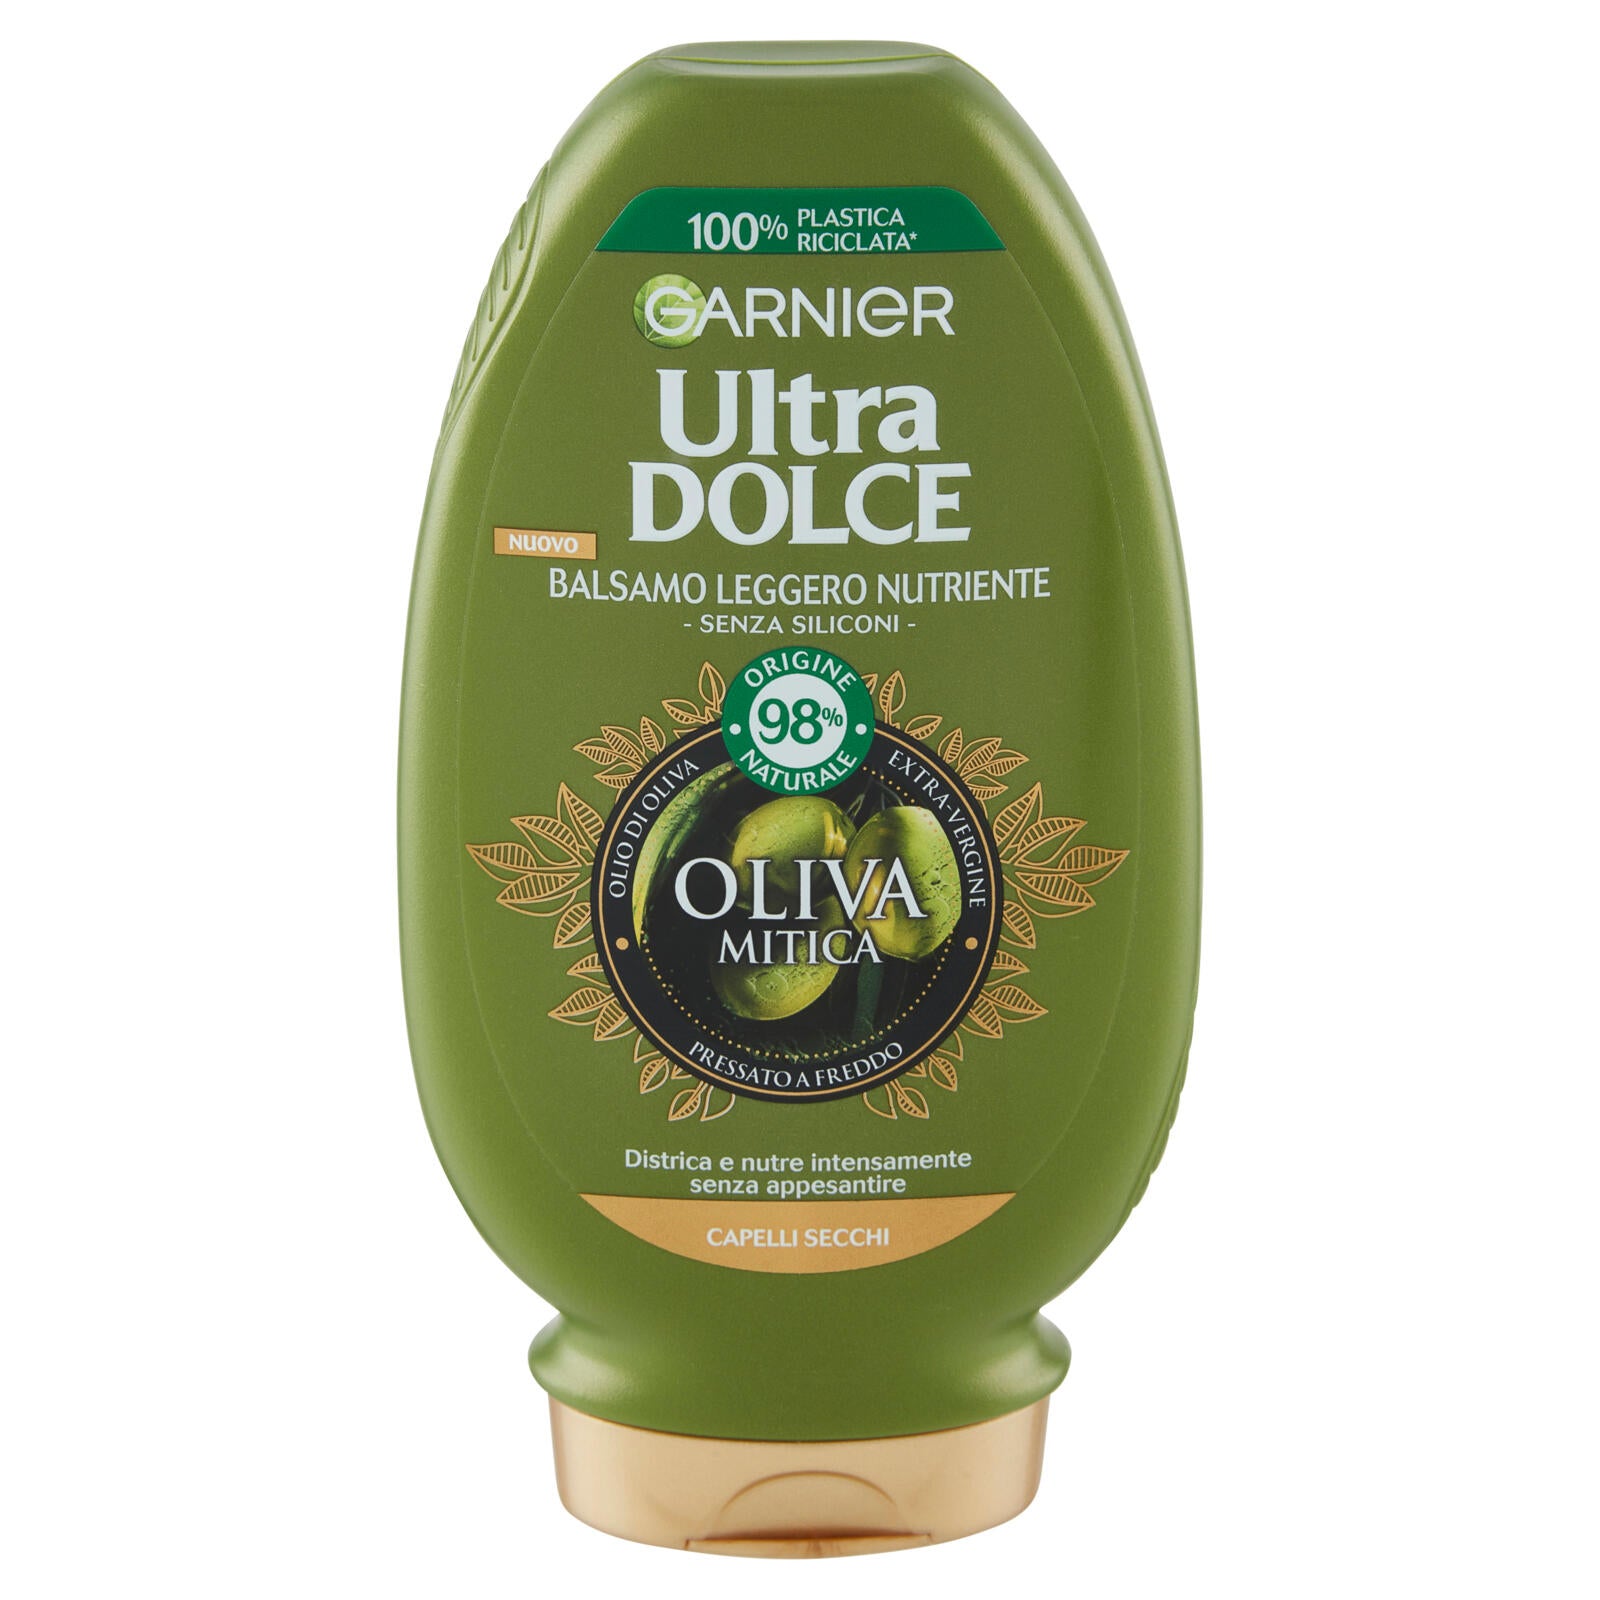 Garnier Ultra Dolce Balsamo nutriente Oliva Mitica all'olio di oliva vergine 200 ml